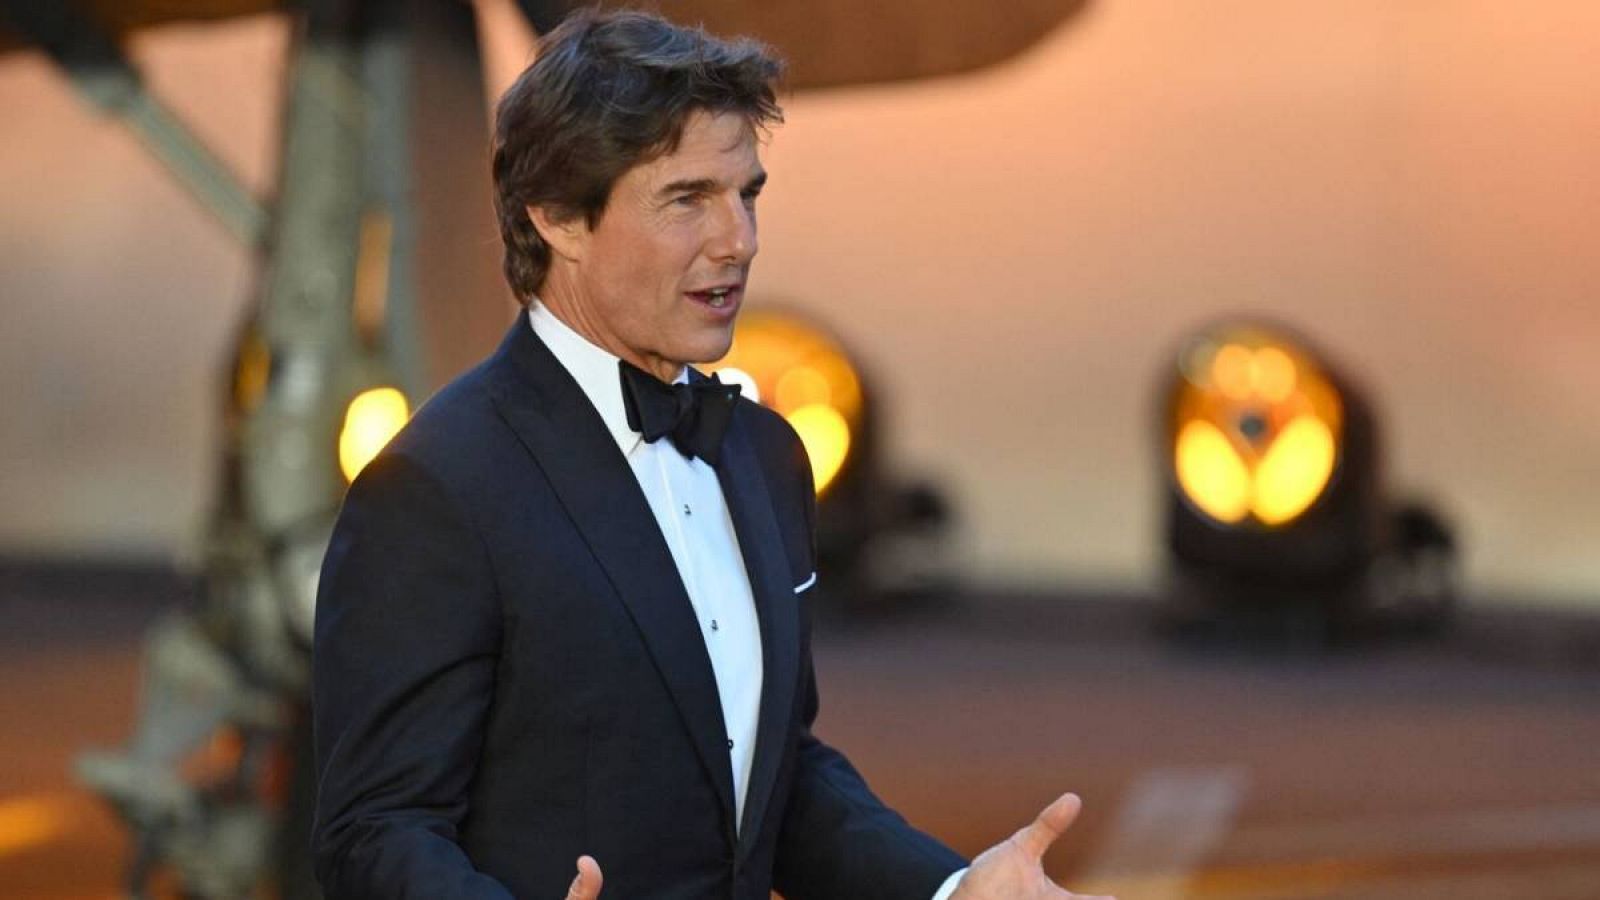 El actor estadounidense Tom Cruise en la alfombra roja a su llegada al estreno británico de la película 'Top Gun: Maverick' en los jardines de Leicester Square, en Londres.